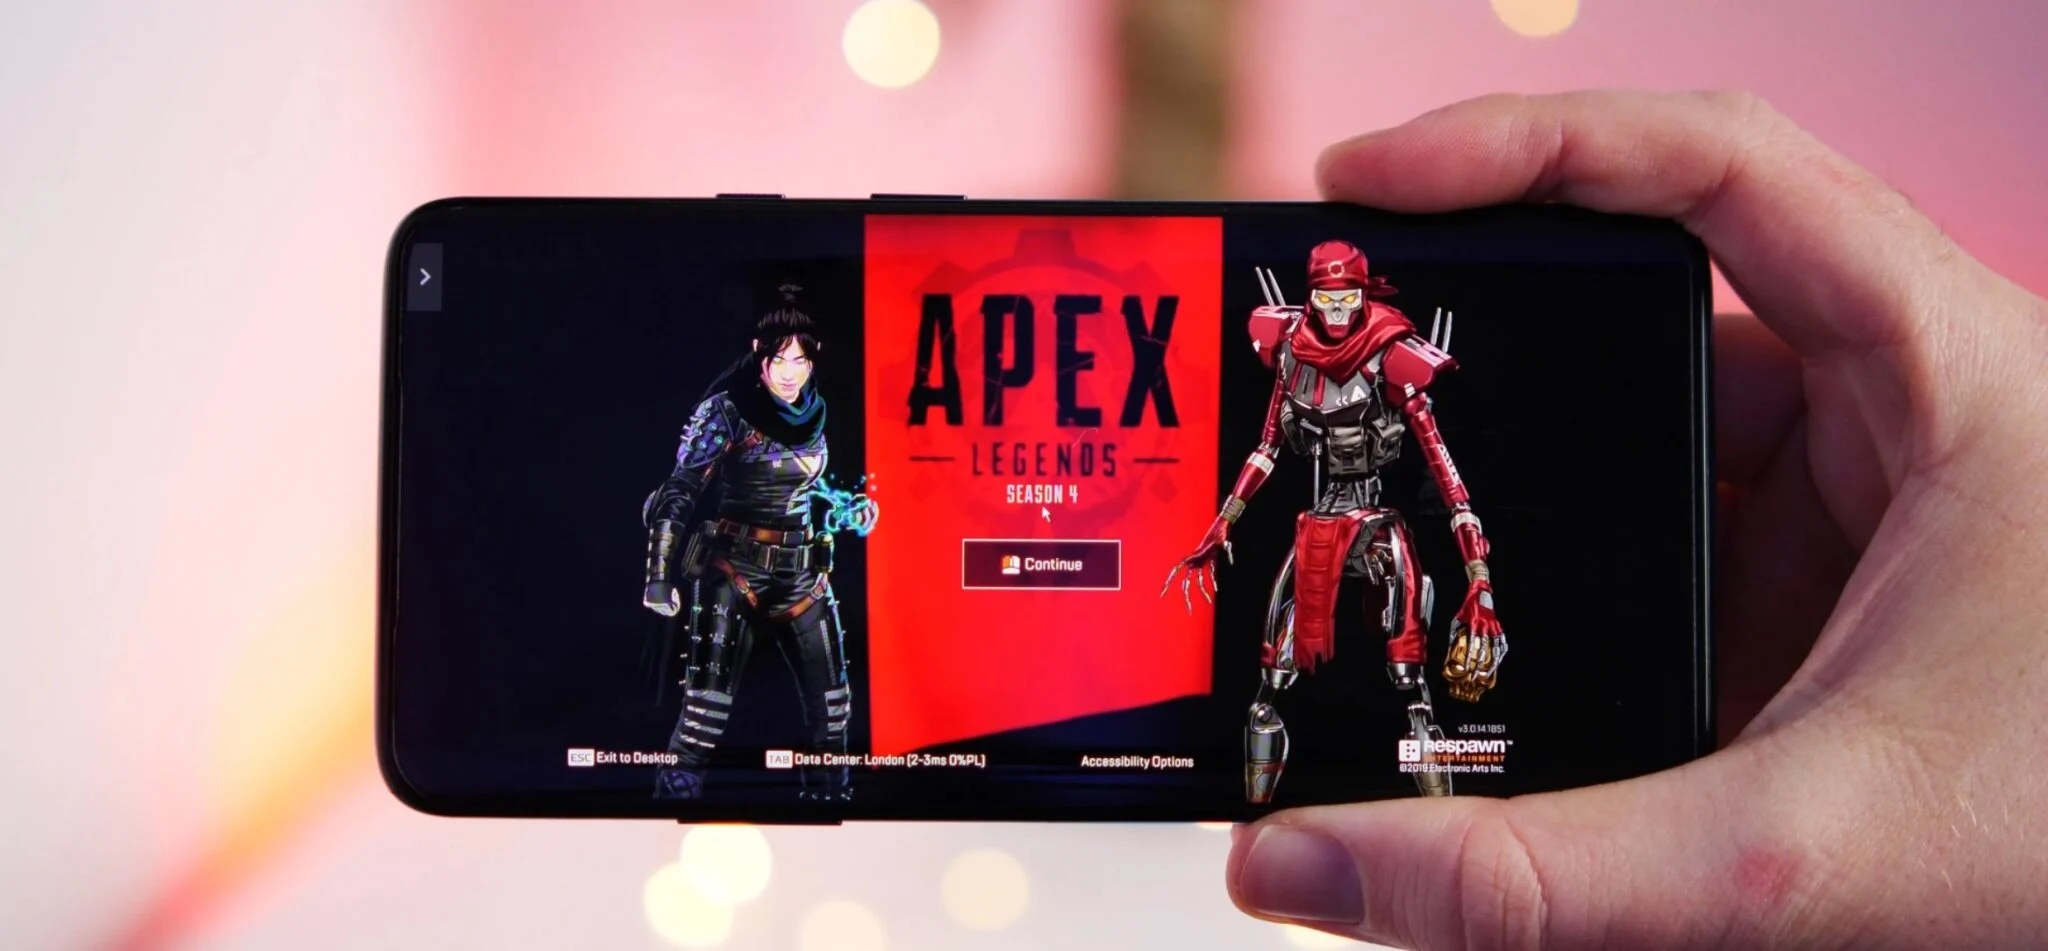 传闻：《Apex英雄》手游5月17日上线且有独家英雄